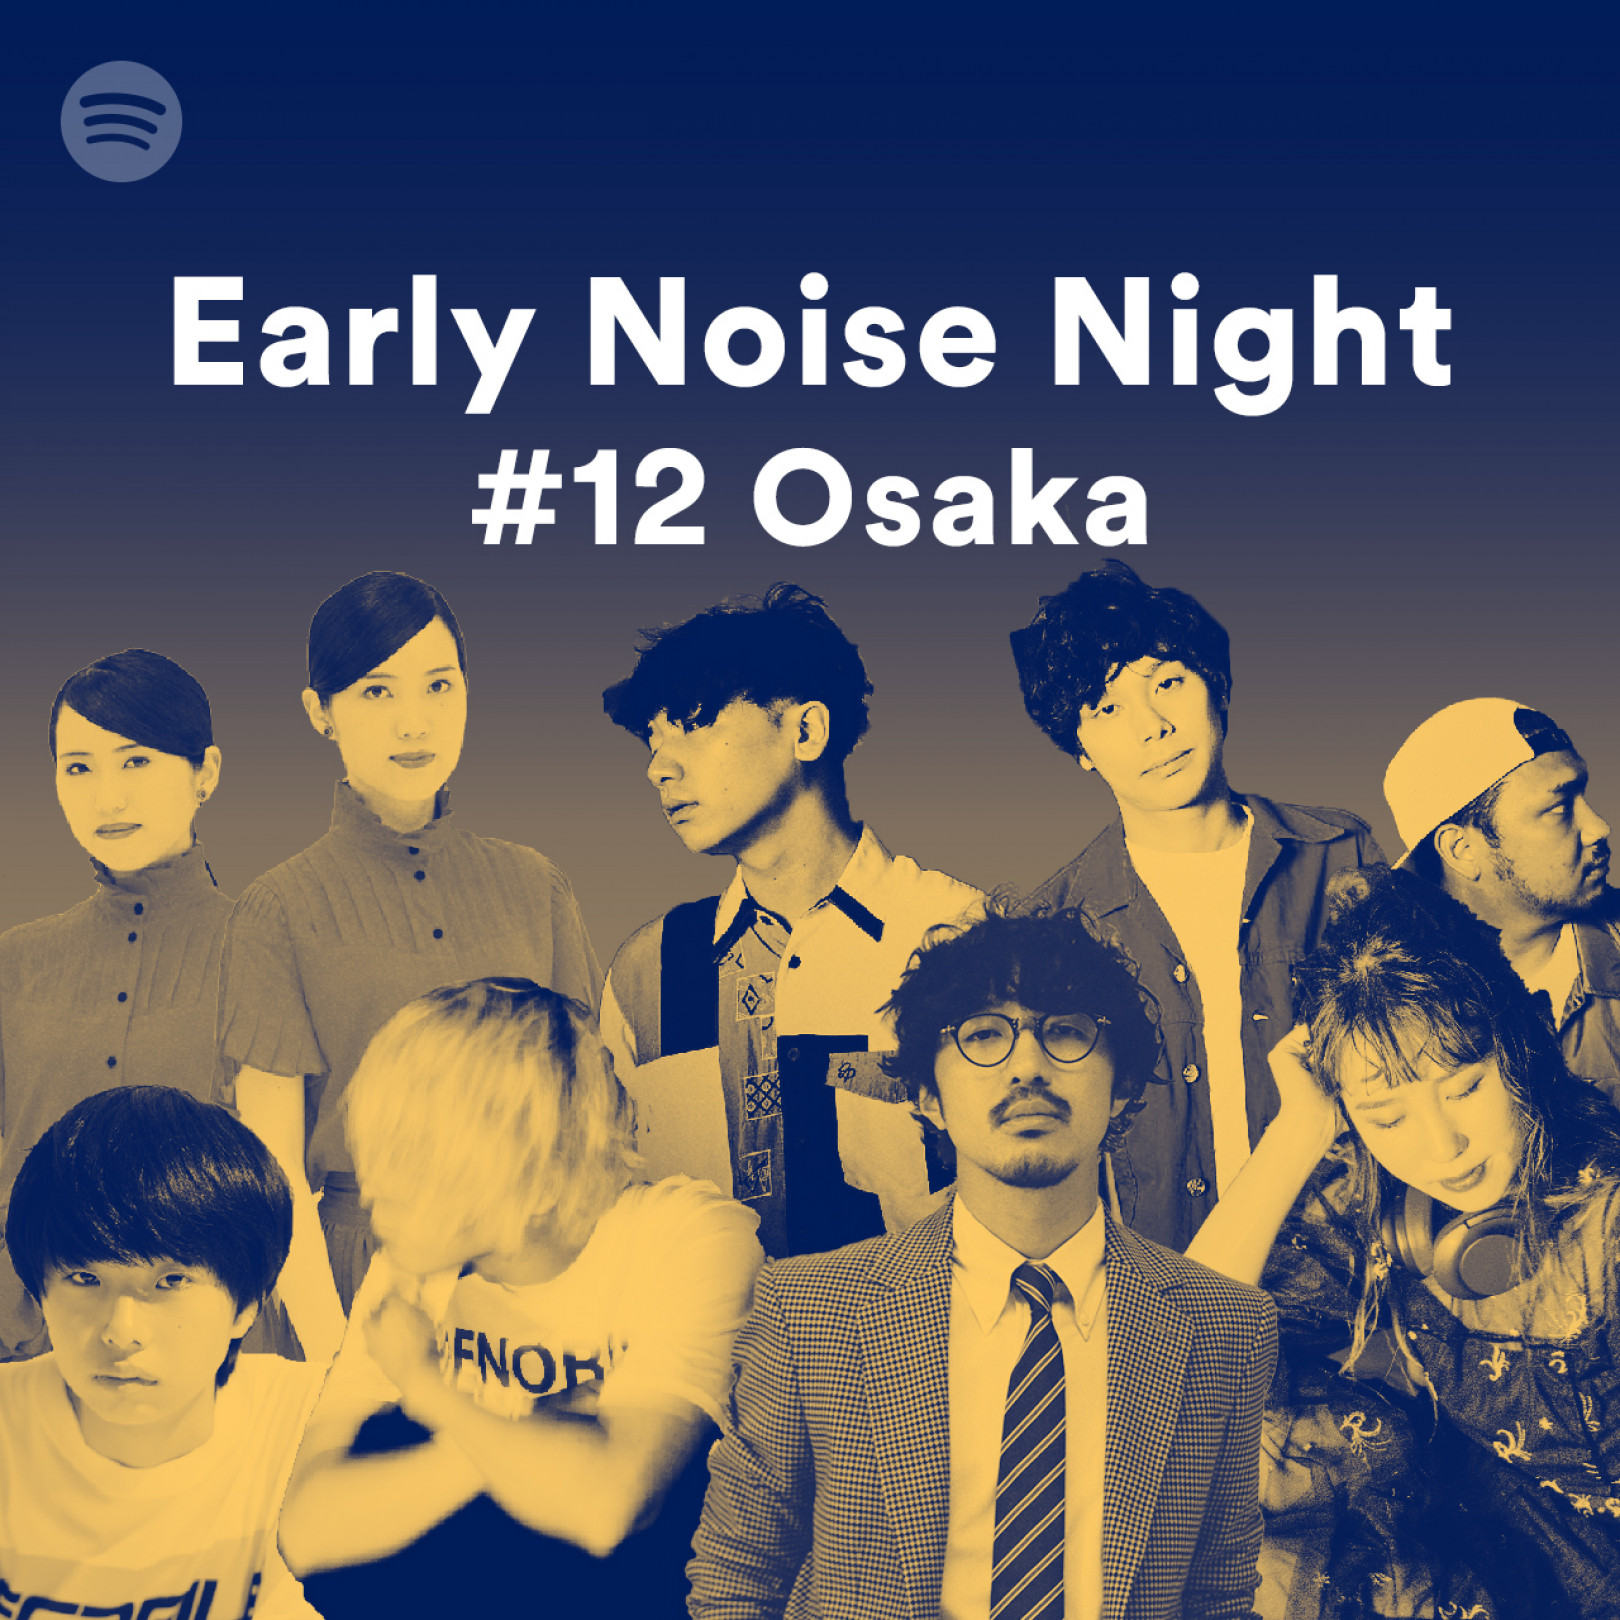 「Spotify Early Noise Night #12 Osaka」開催